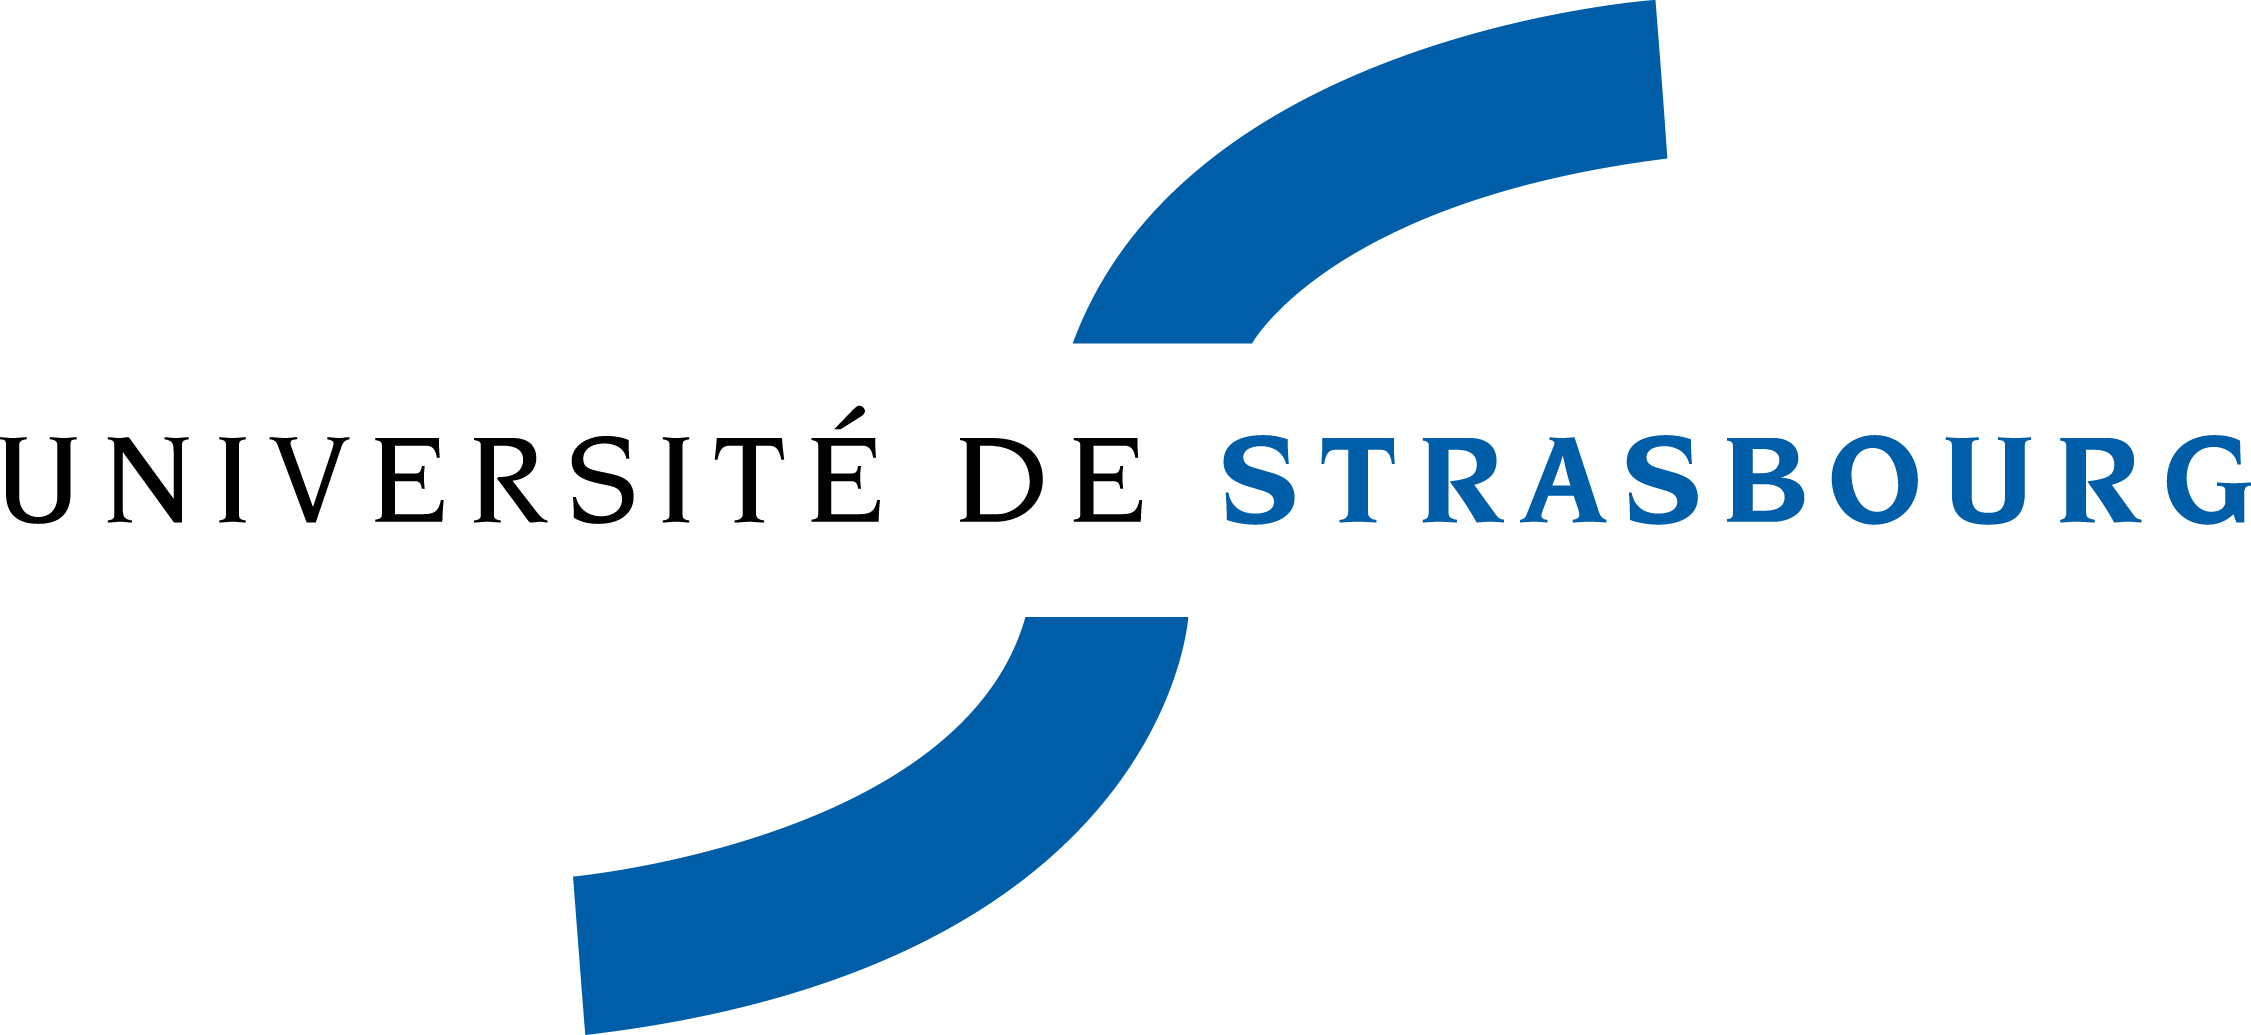 Unistra-logo.png